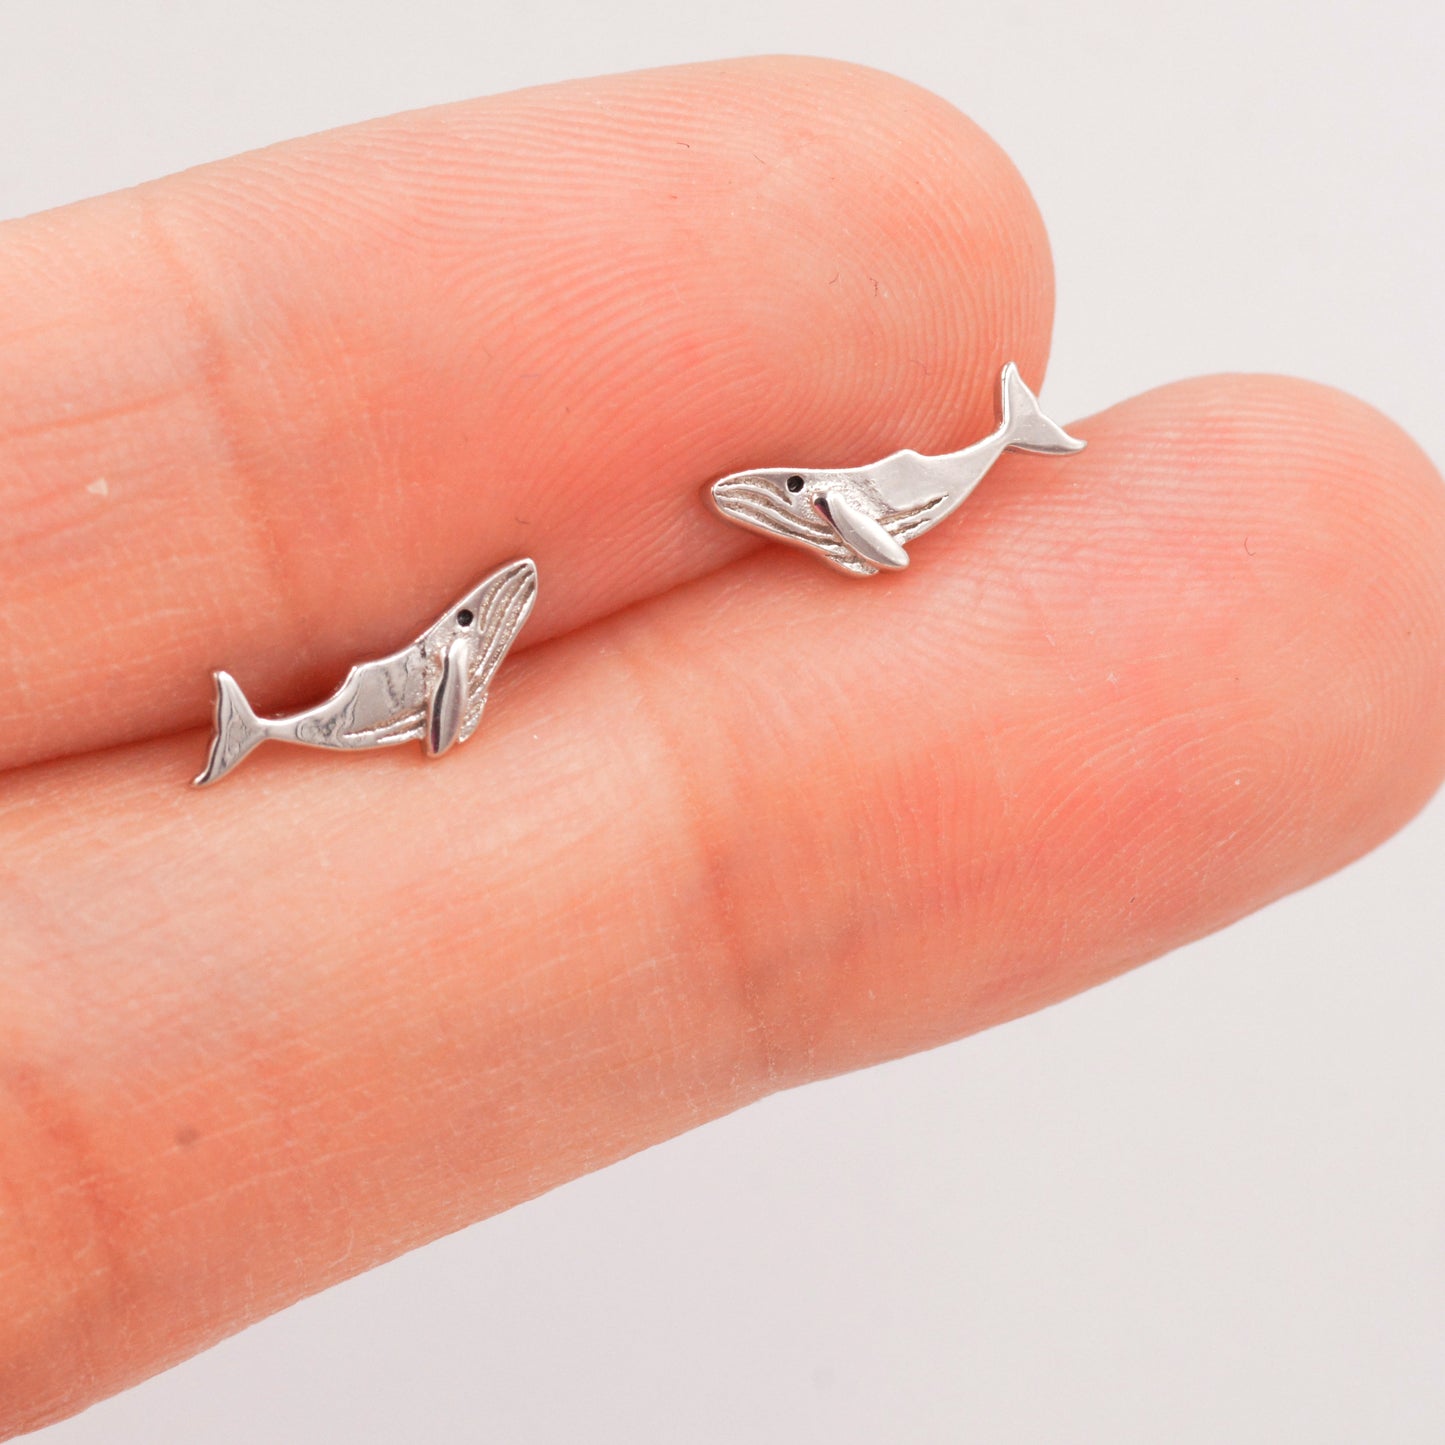 Humpback Whale Stud Earrings in Sterling Silver - Petite Fish Stud -  Sea, Ocean, Cute,  Fun, Whimsical